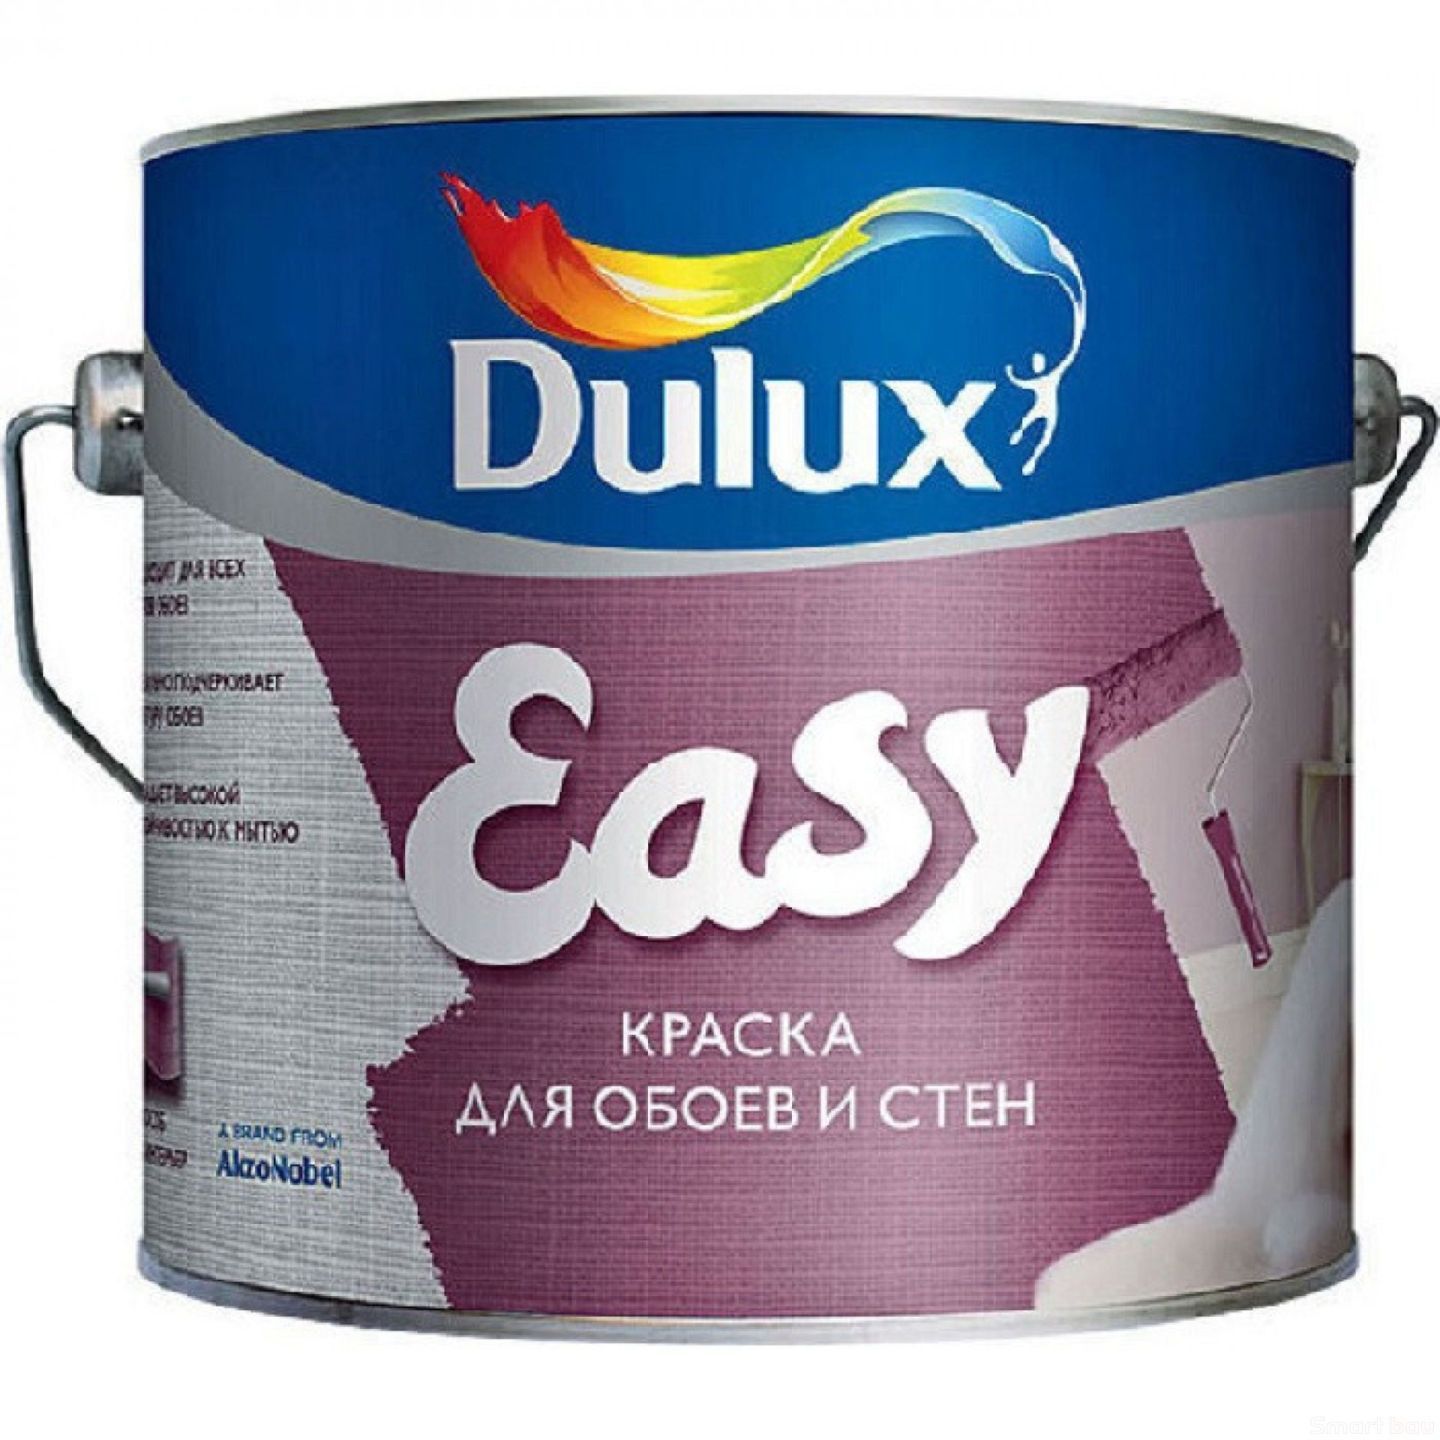 Dulux easy моющаяся матовая